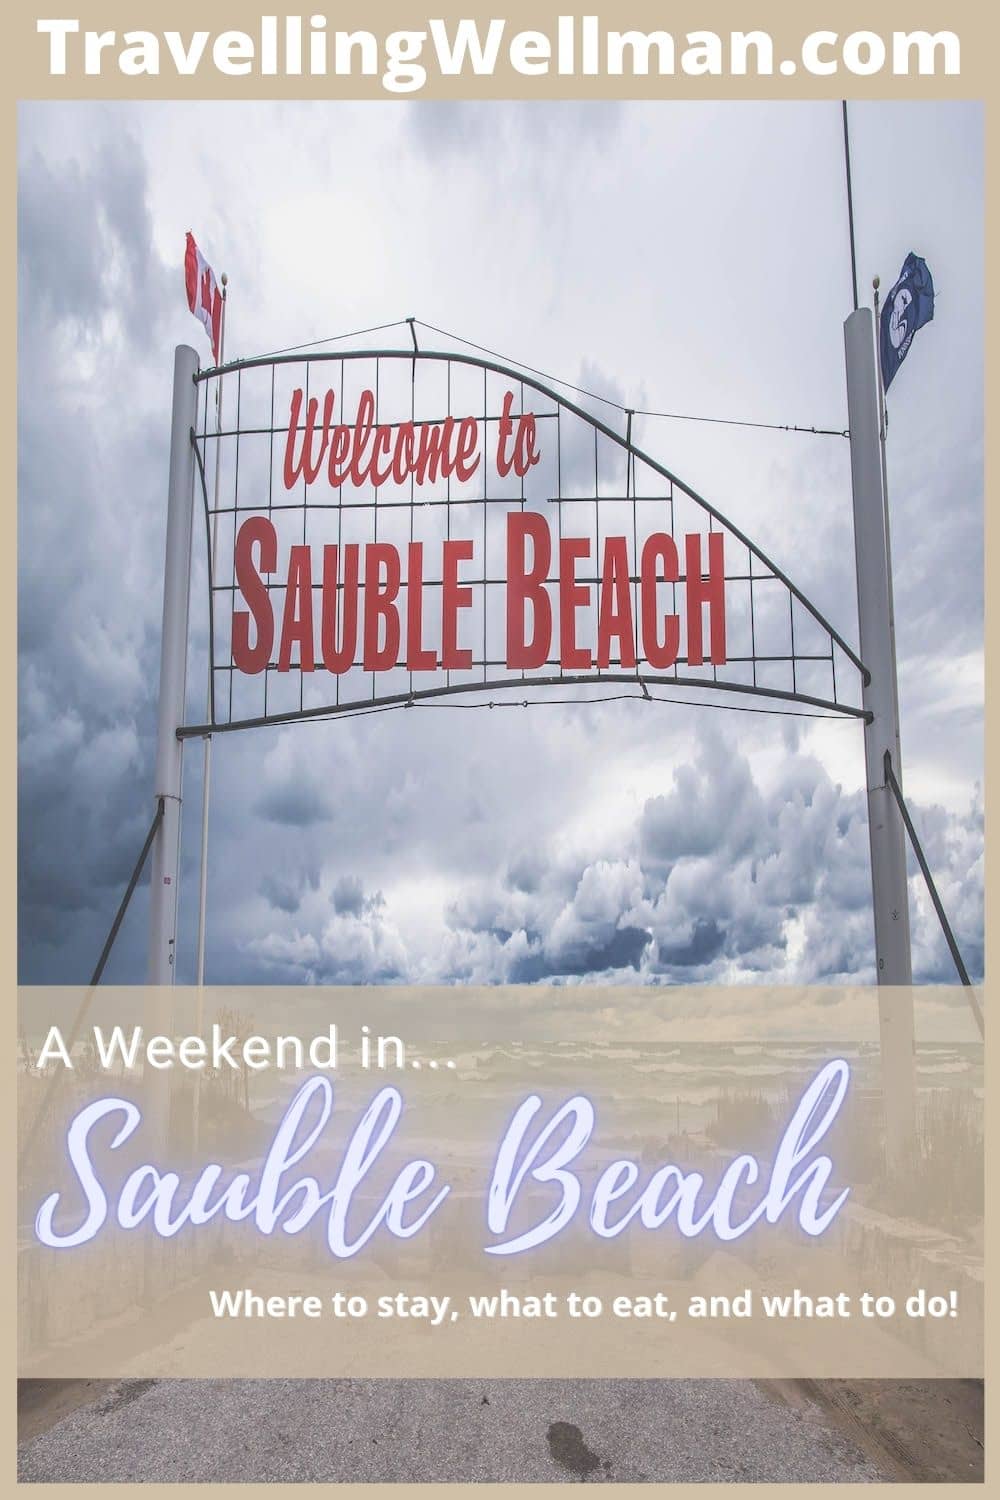 Sauble Beach Ontario